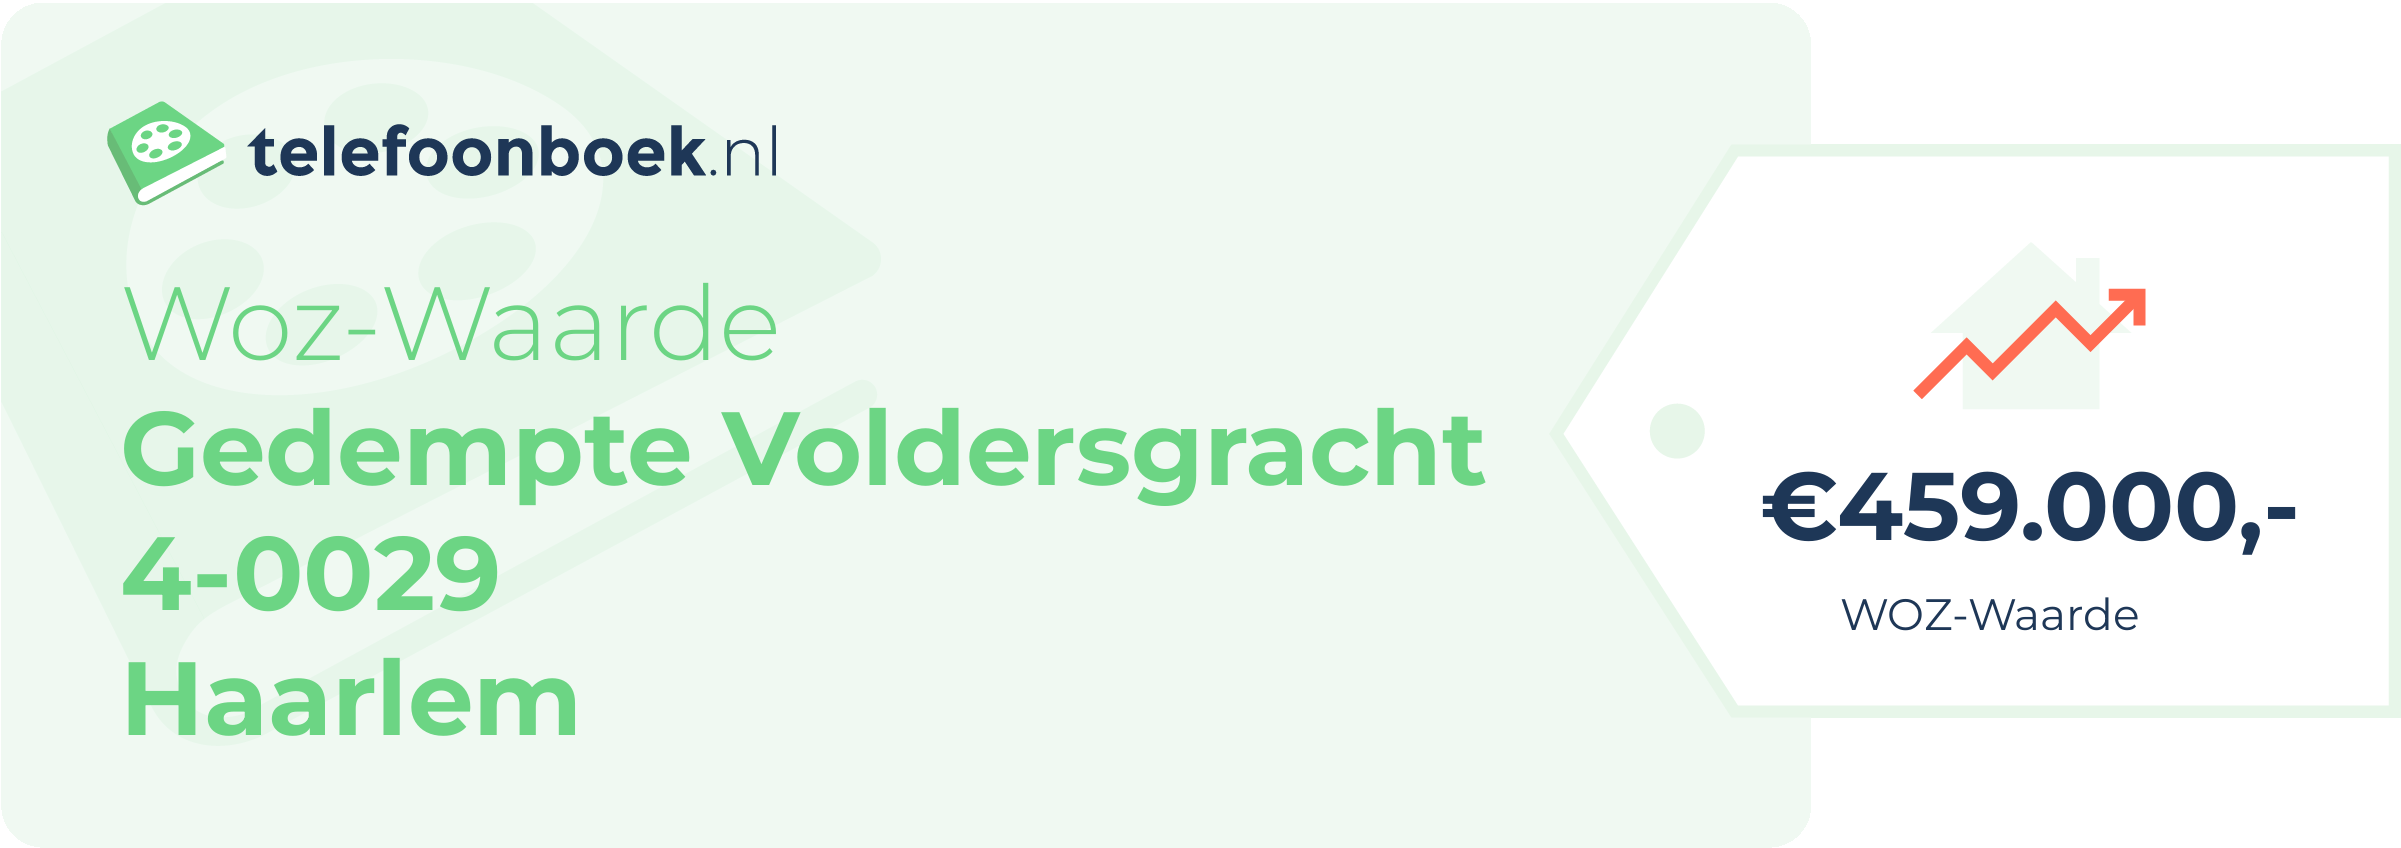 WOZ-waarde Gedempte Voldersgracht 4-0029 Haarlem